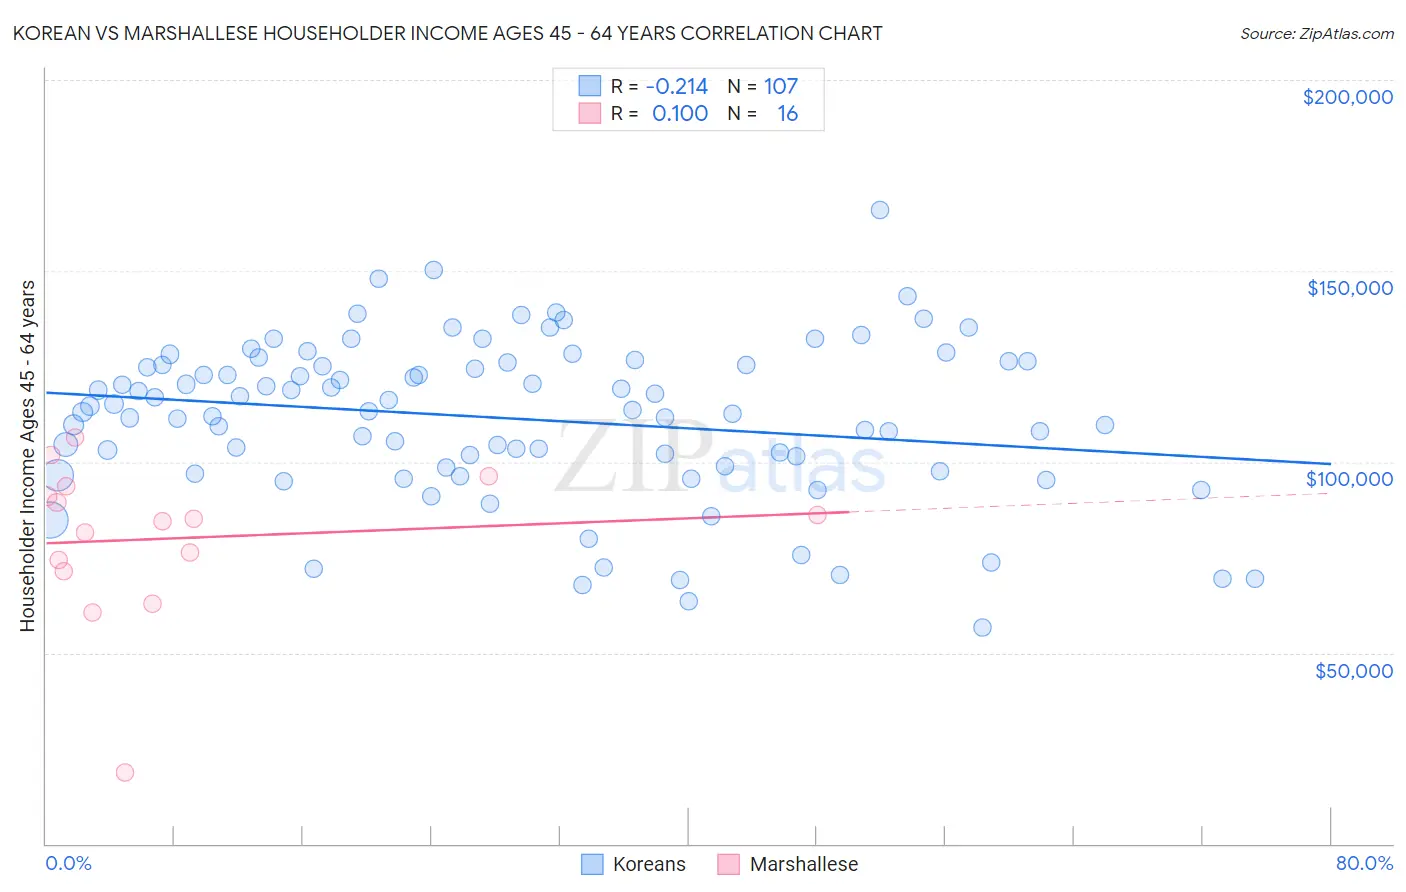 Korean vs Marshallese Householder Income Ages 45 - 64 years